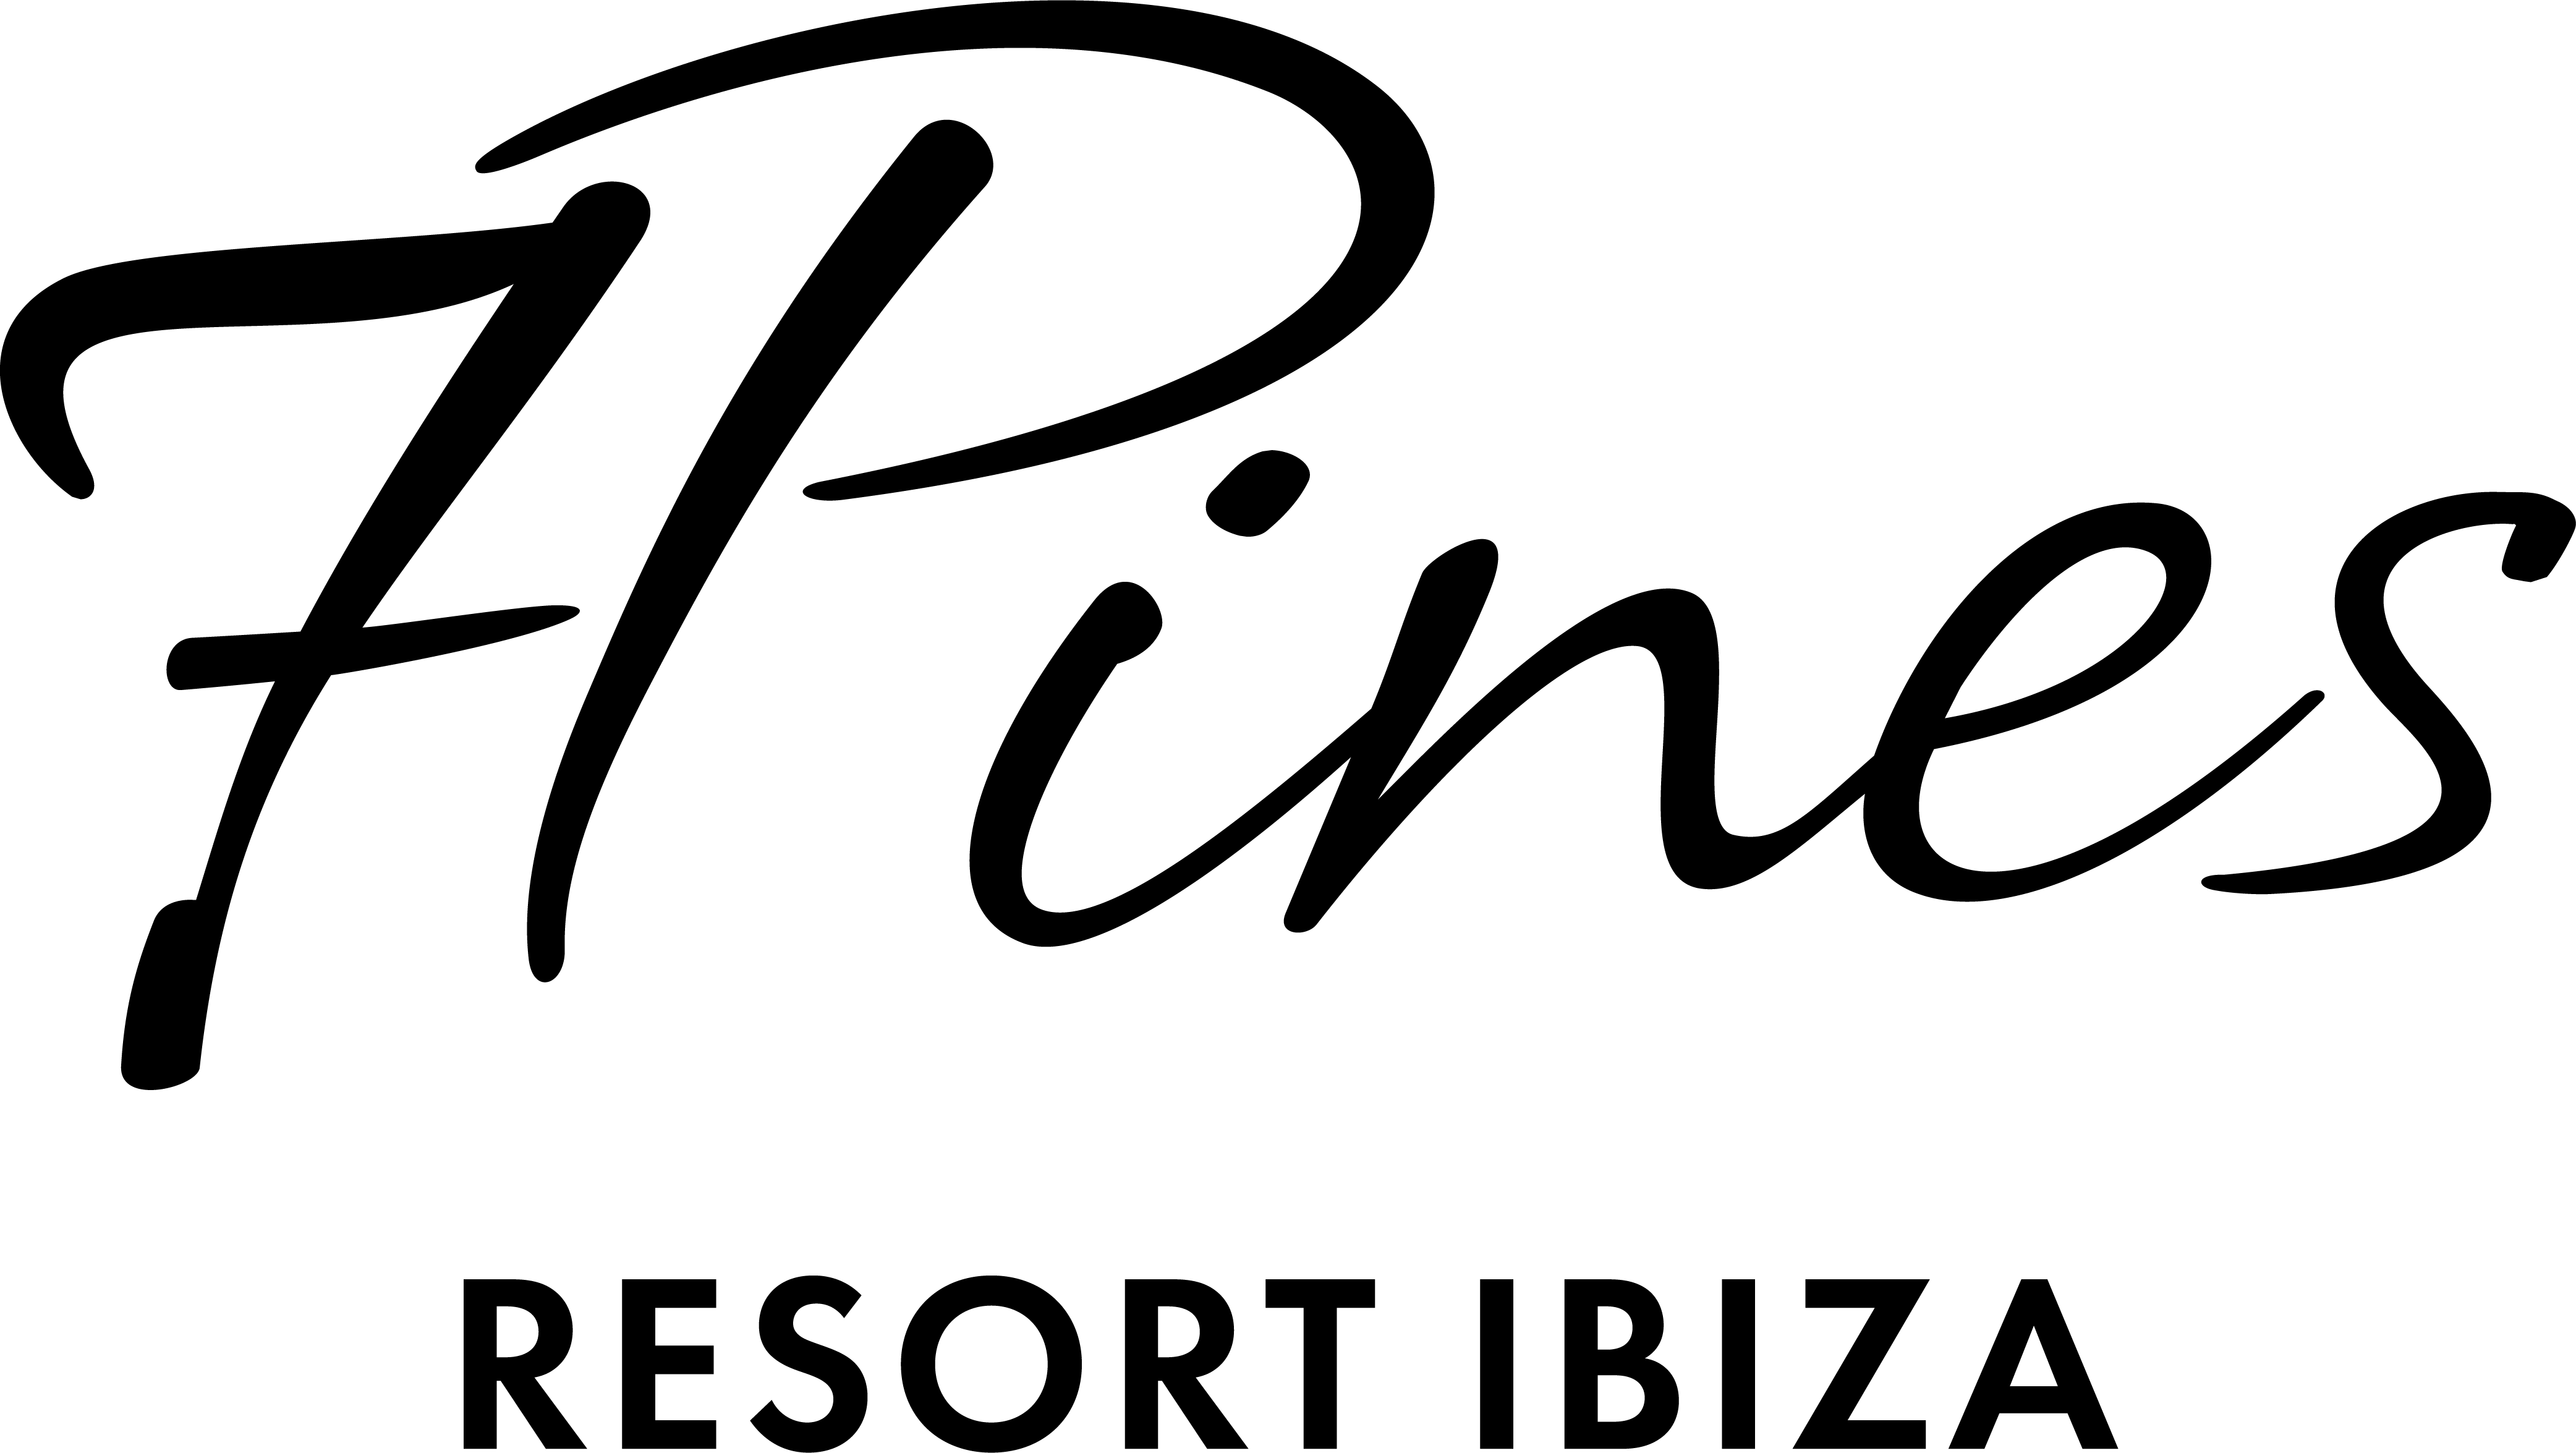 Ein schwarzer Hintergrund mit einem schwarzen Quadrat bei 7Pines Grand Villas